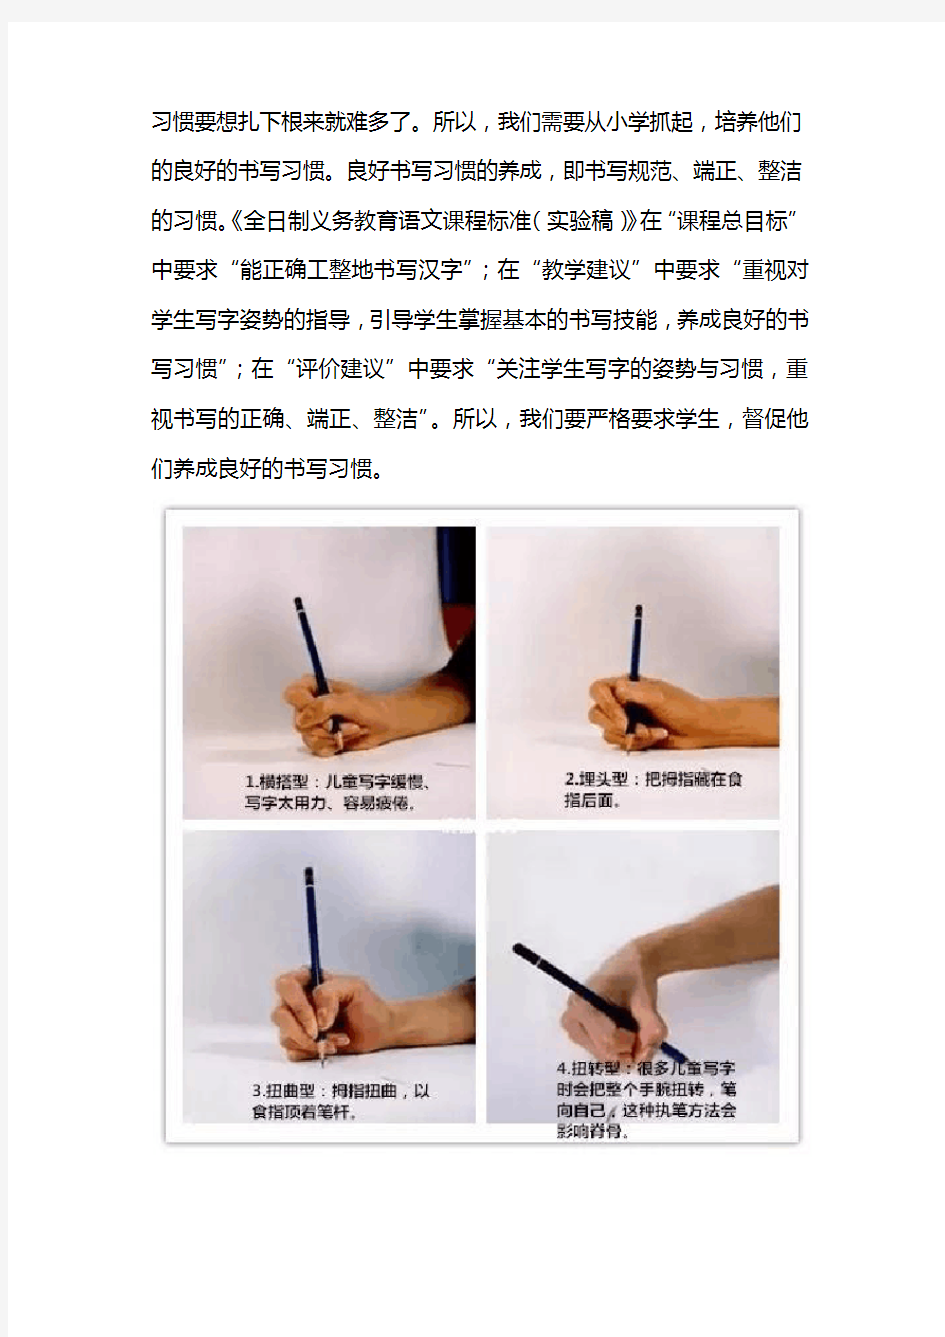 规范汉字书写,具有极其重要的意义!小学生更应重视硬笔书法的练习。